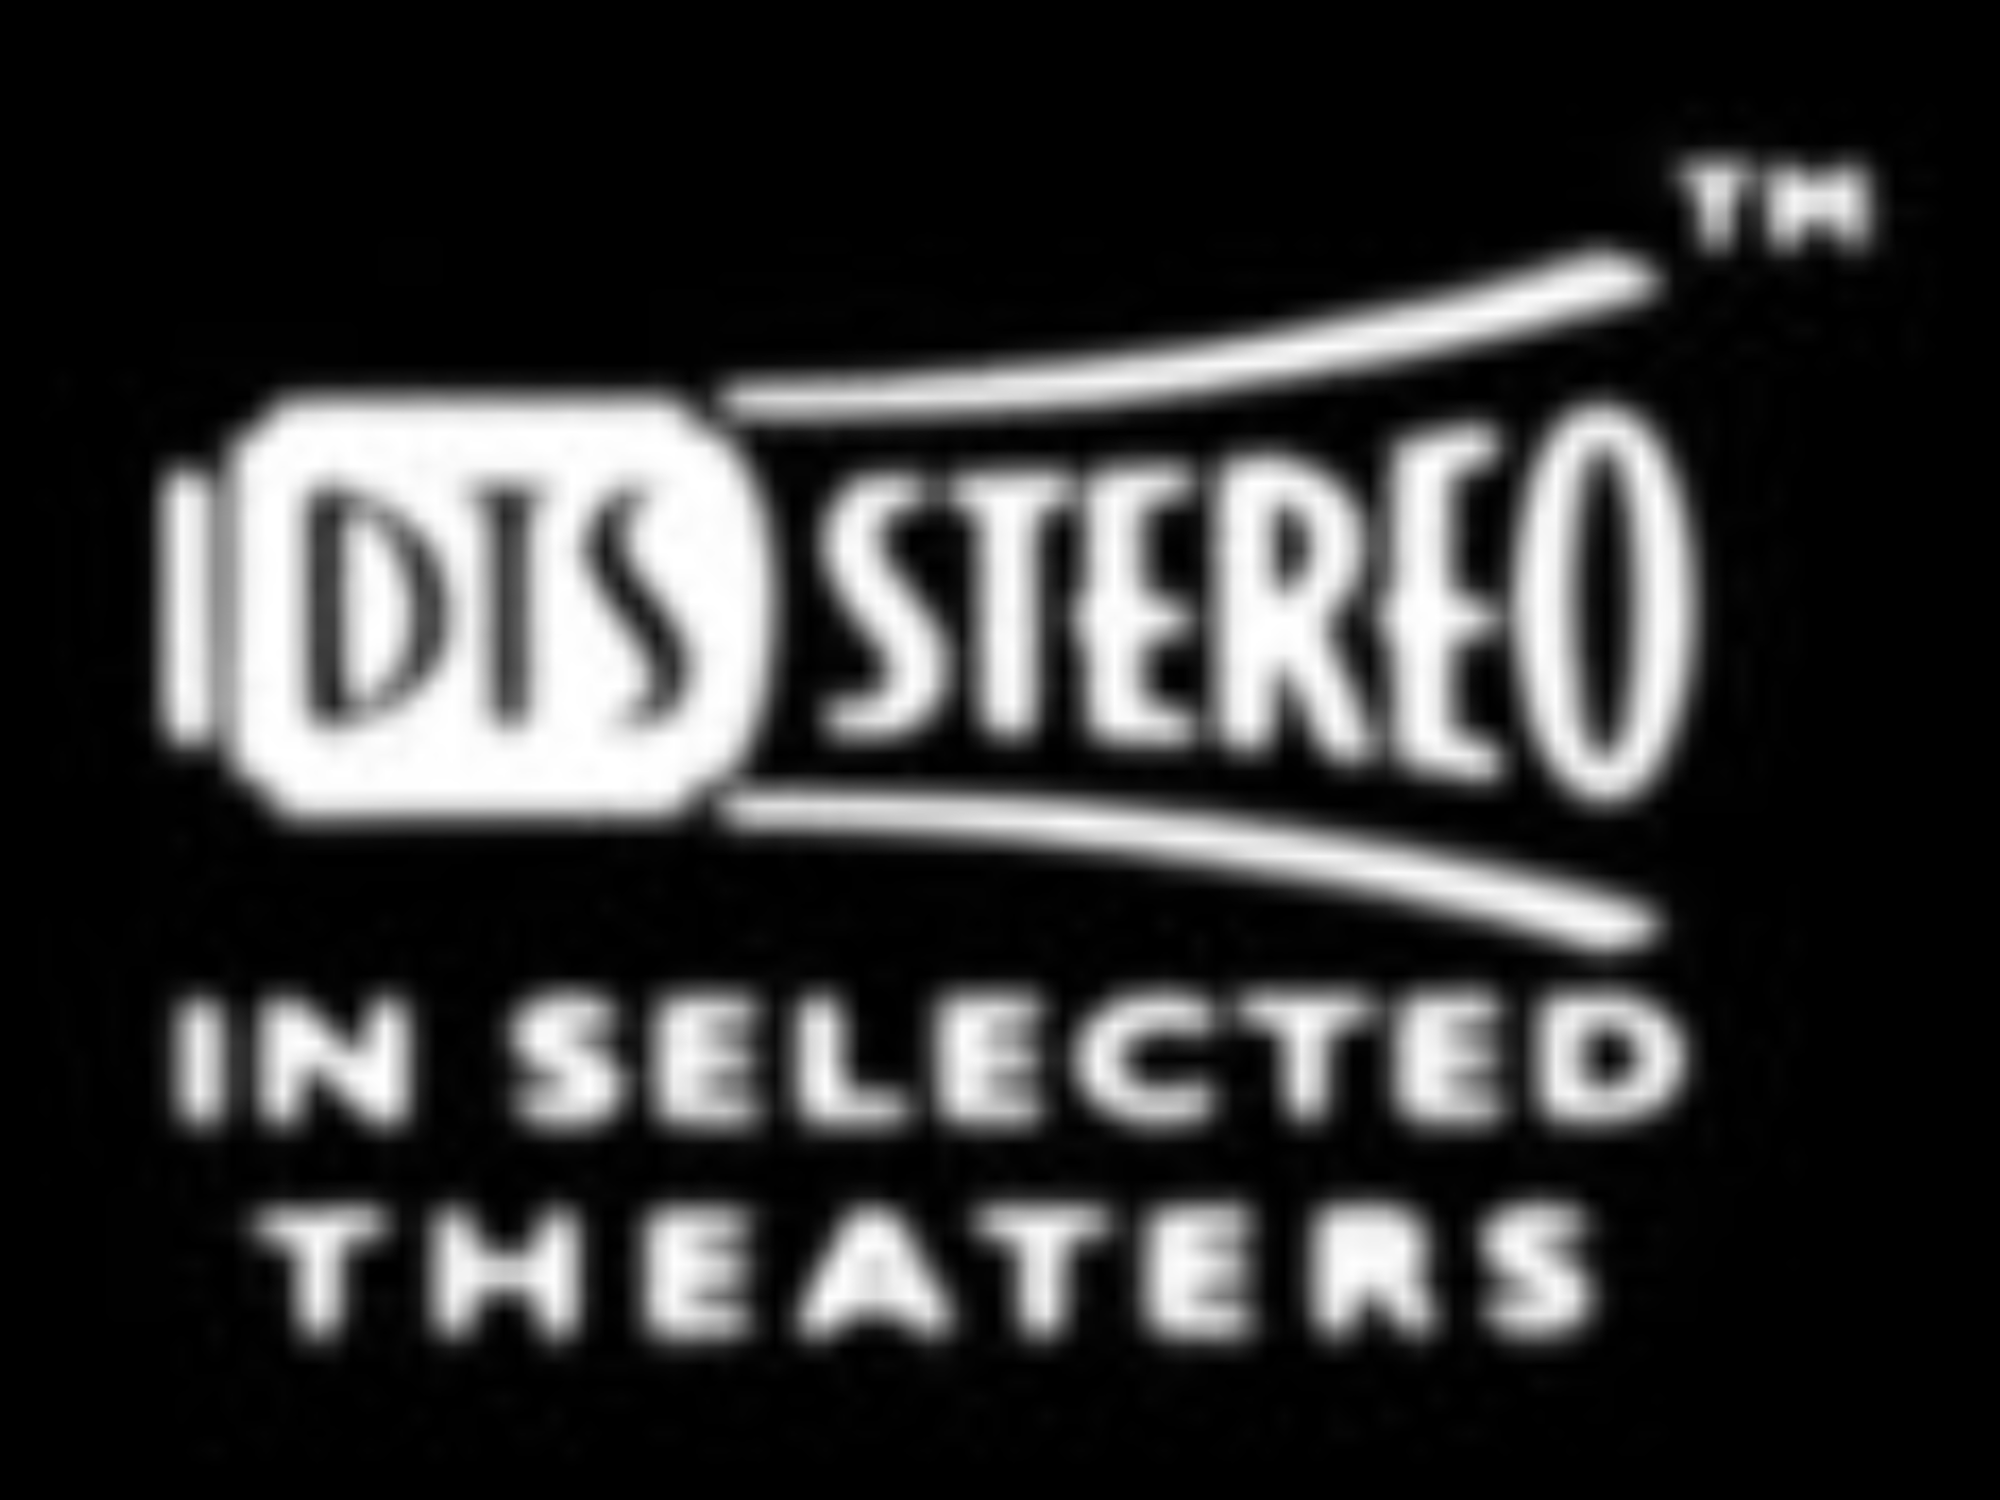 DTS Stereo Logo - DTS Stereo | Logopedia | FANDOM powered by Wikia